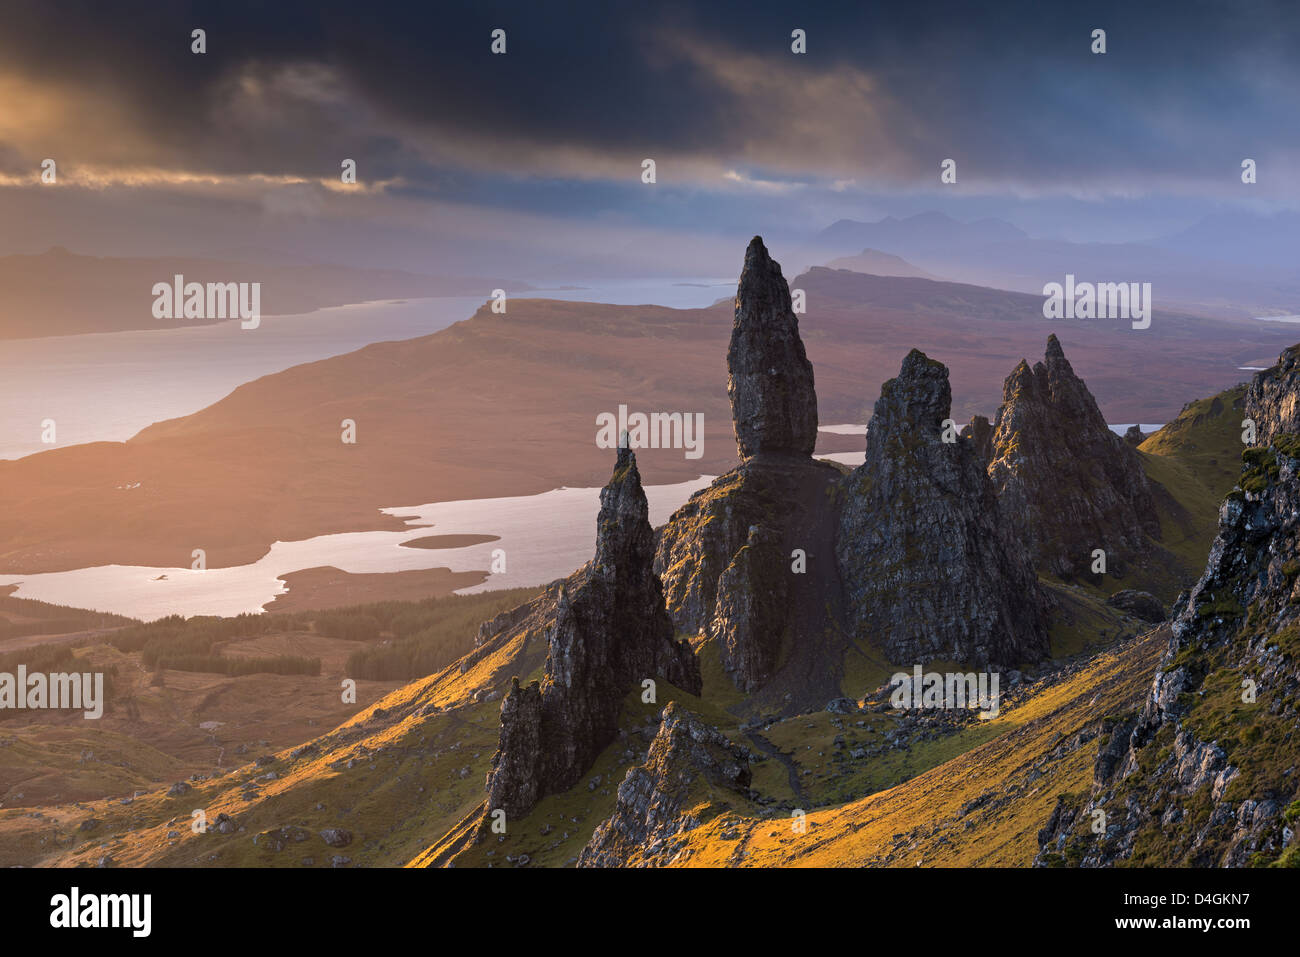 Vieil Homme de Storr pinacles de basalte de l'île de Skye, en Ecosse. L'hiver (novembre) 2012. Banque D'Images